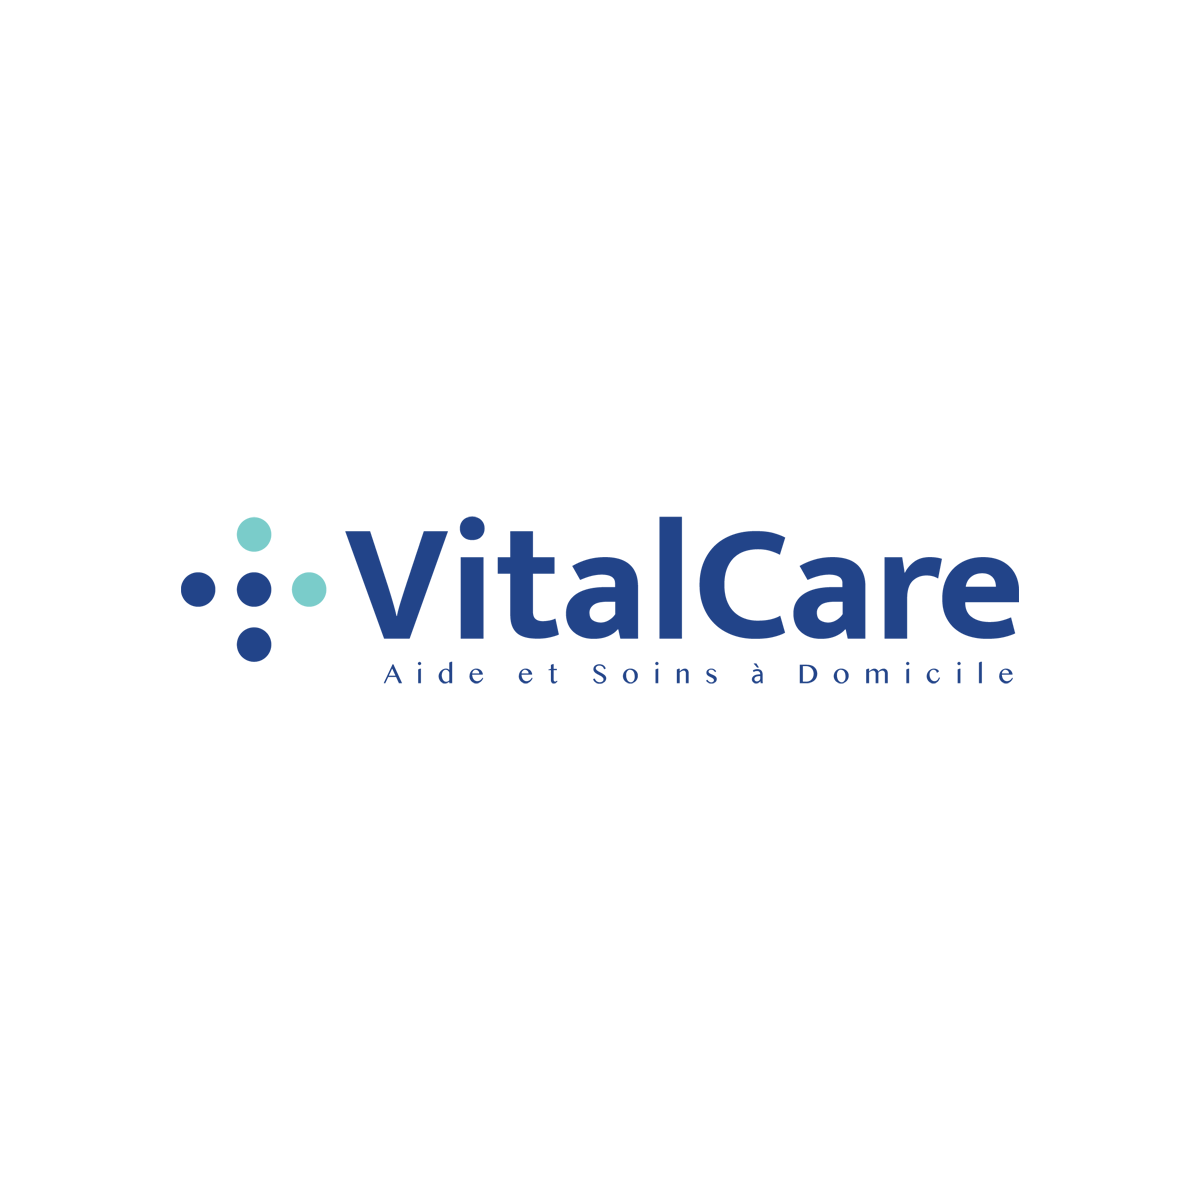 vitalcare